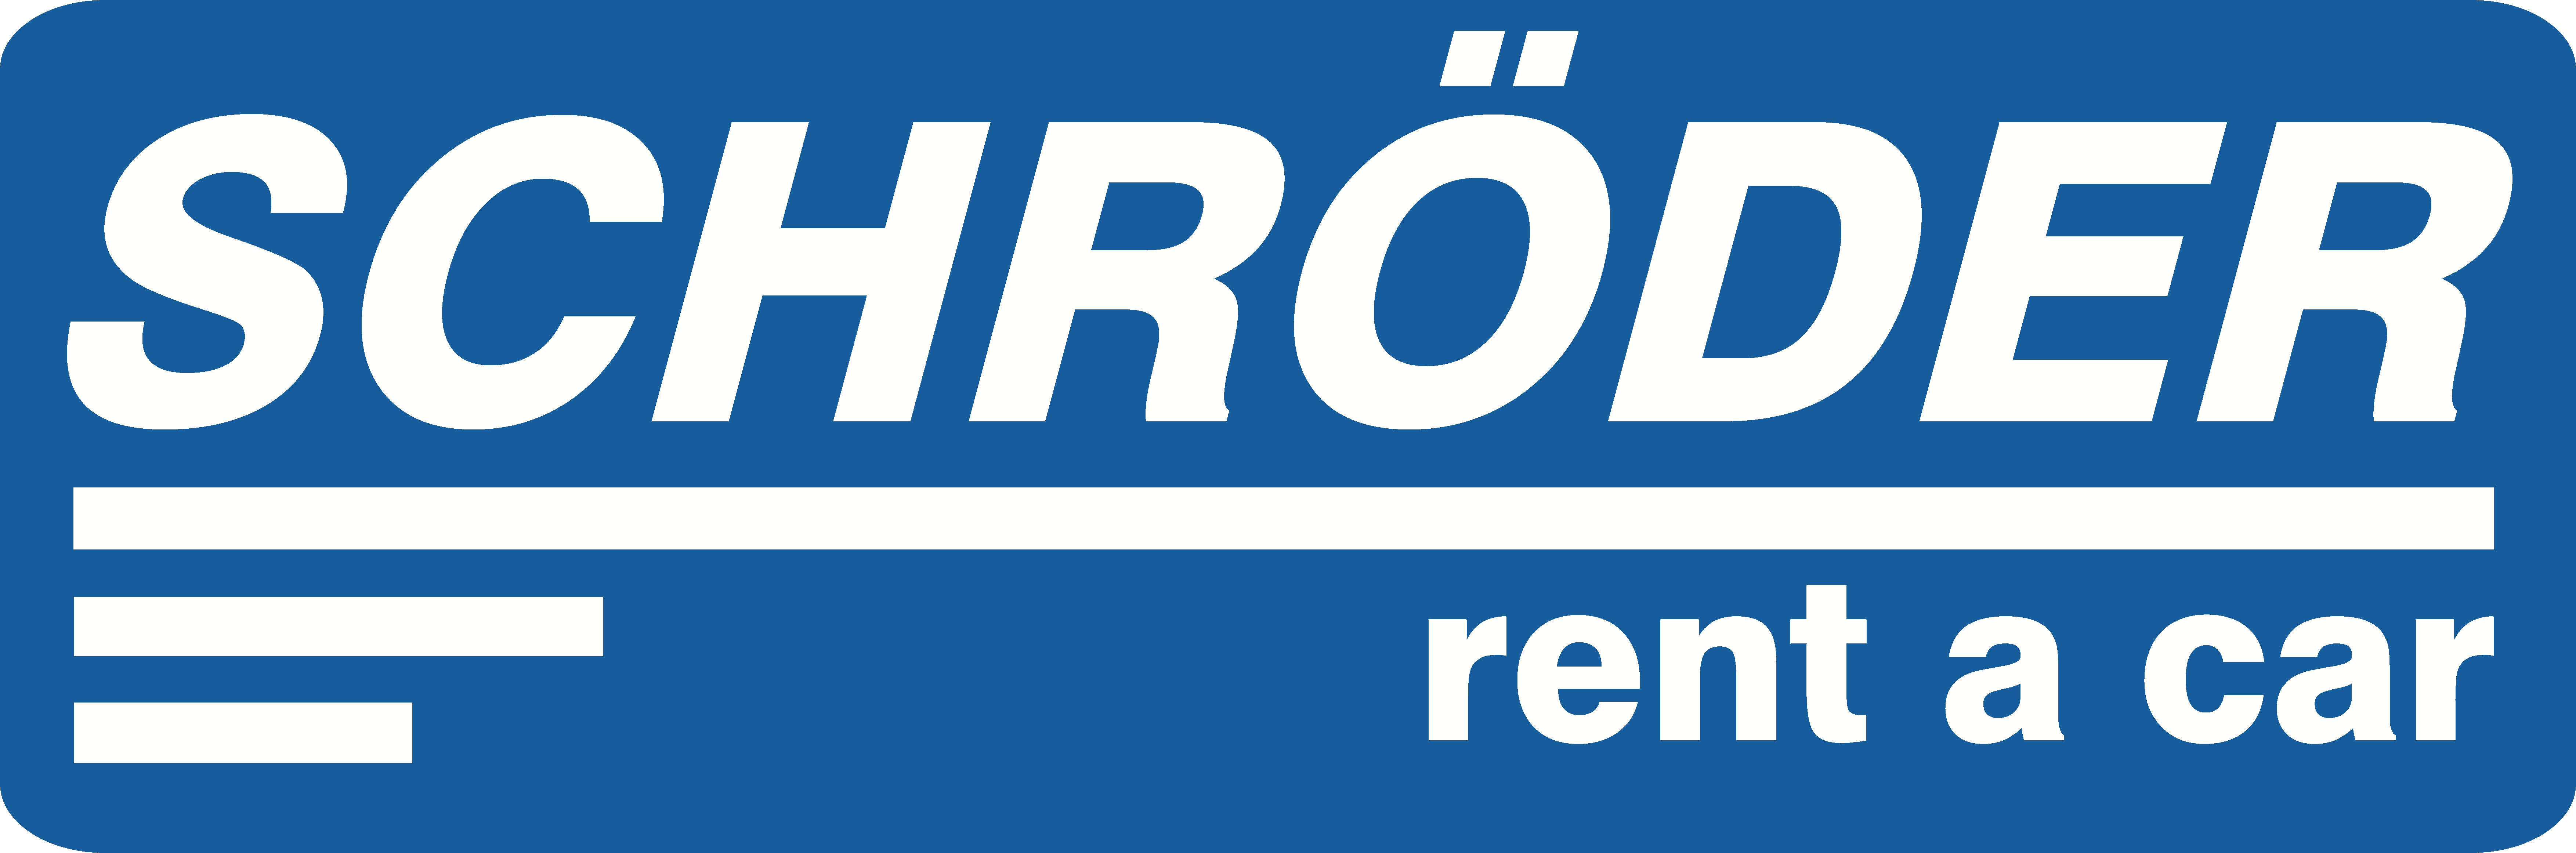 Schröder rent a car – Die blaue Autovermietung Logo